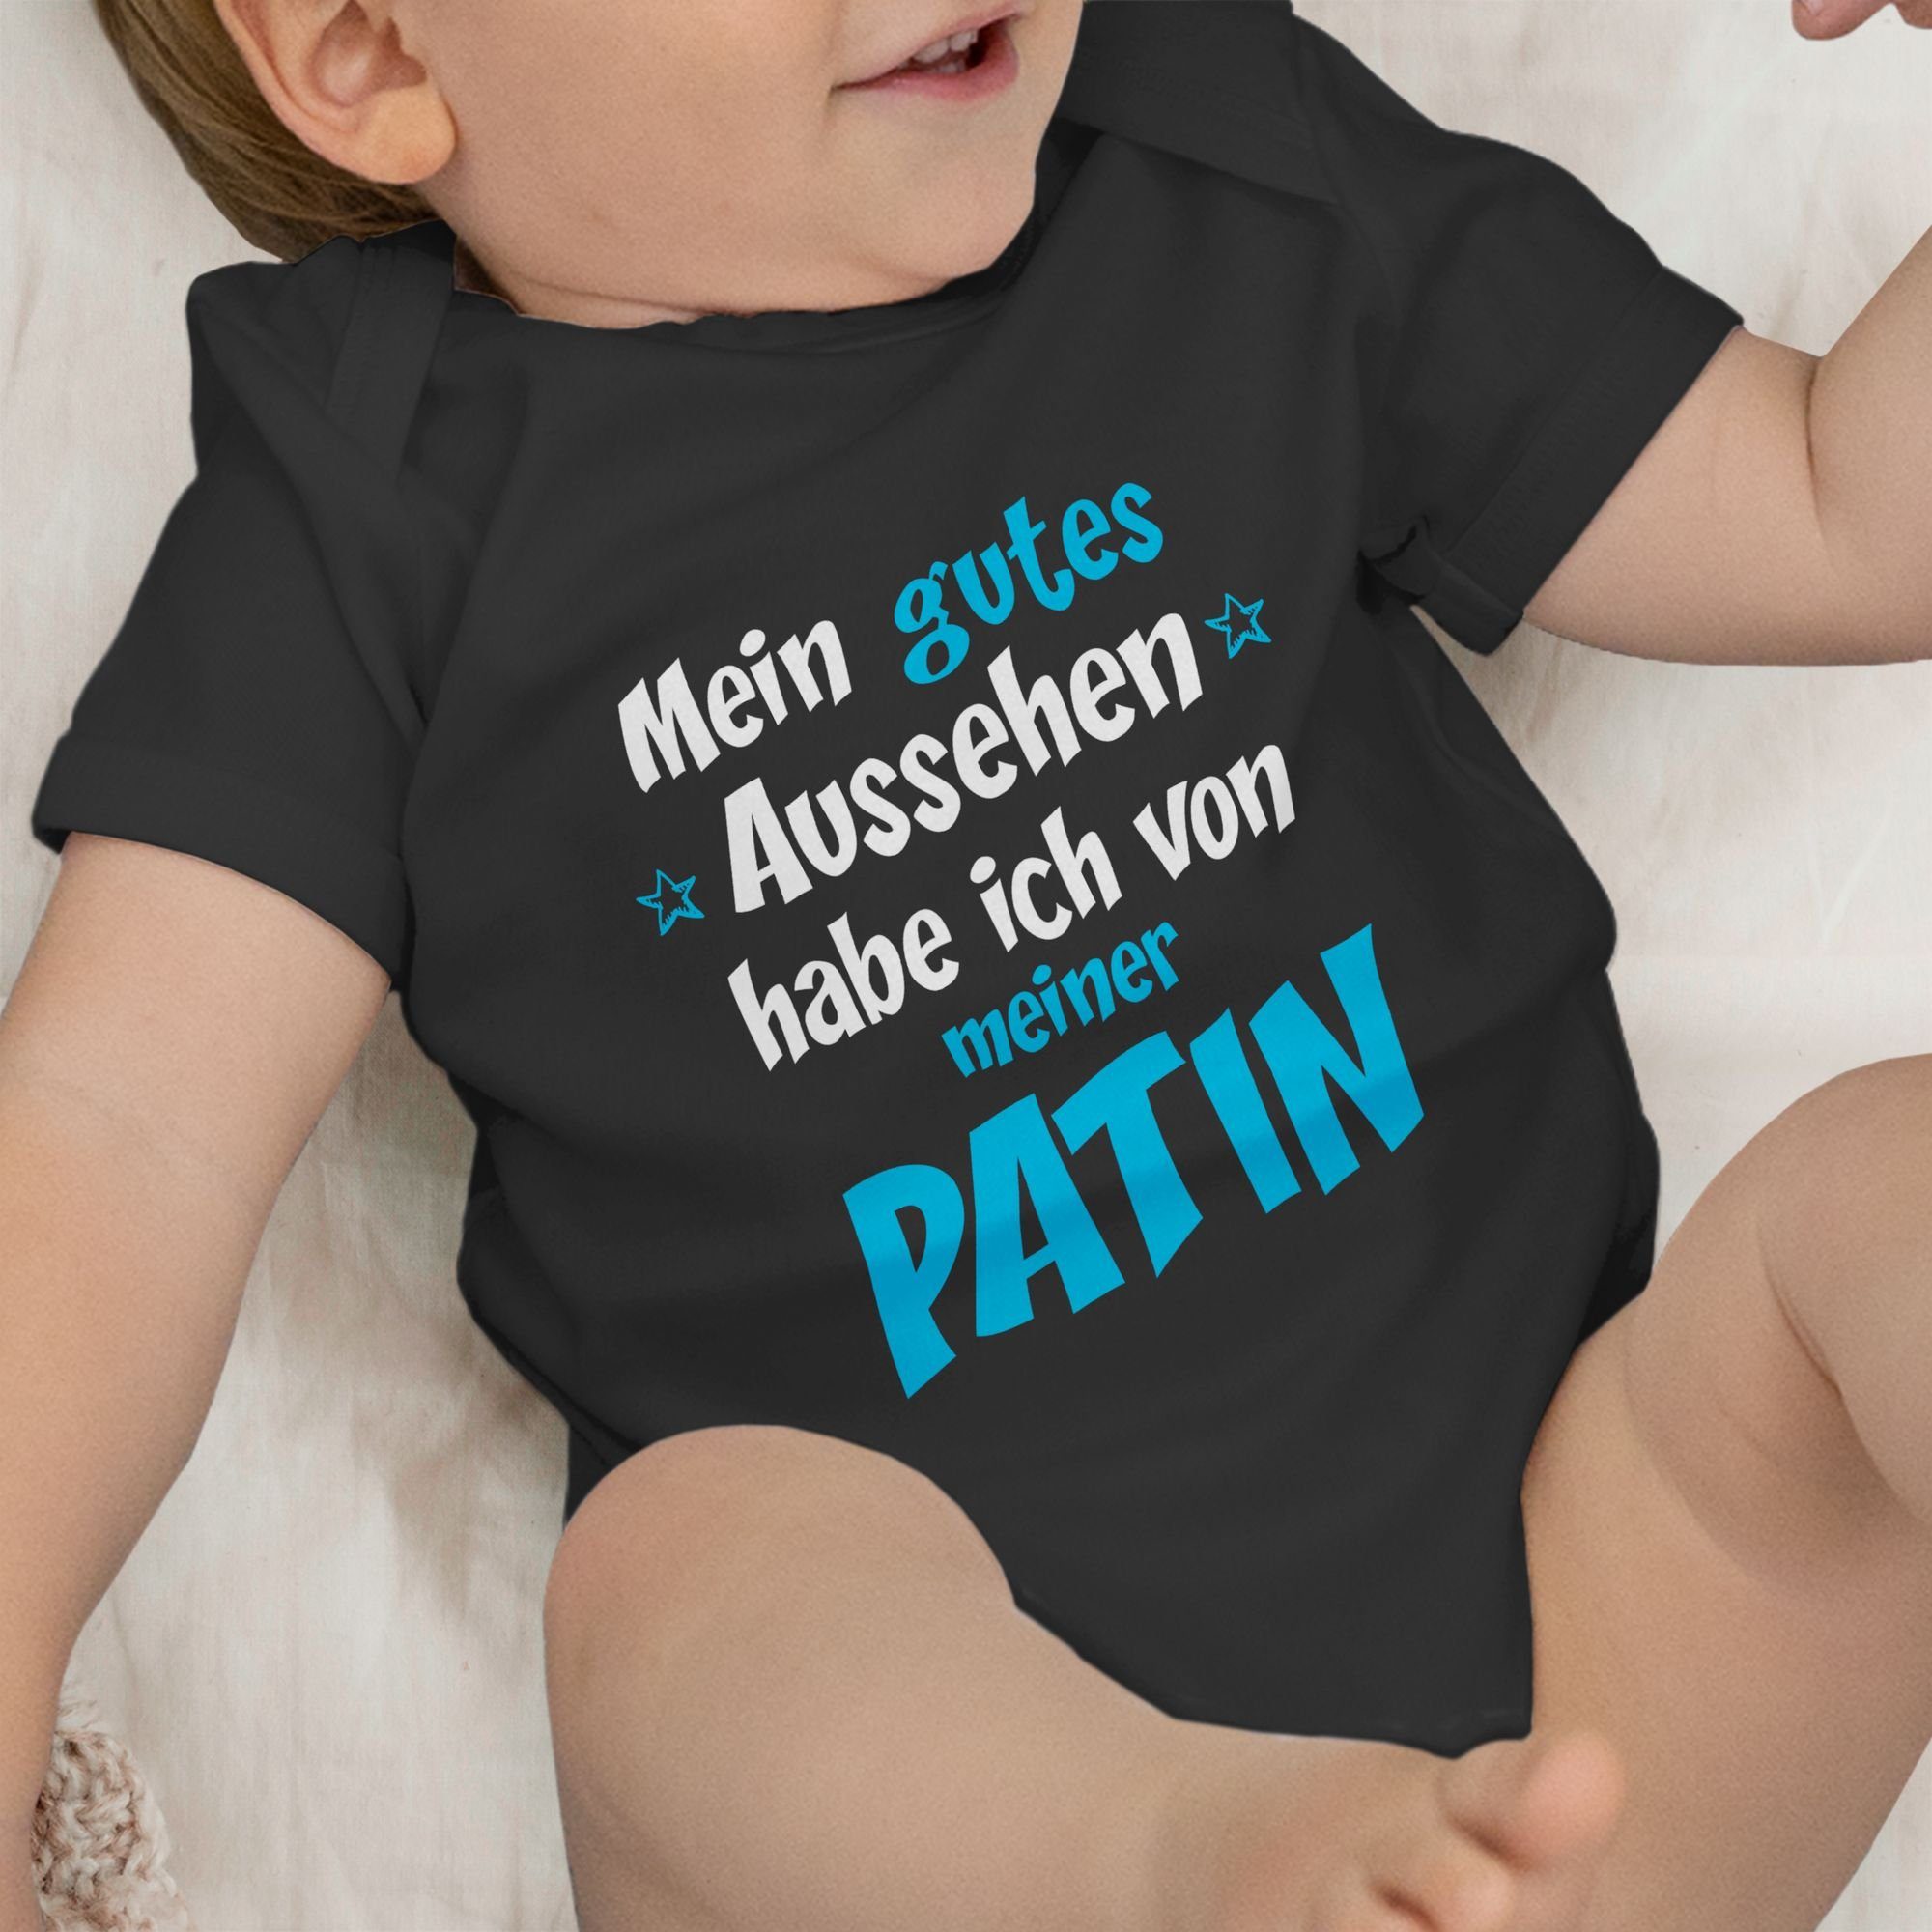 3 Gutes Patin Patentante - Baby Shirtracer Shirtbody Aussehen Schwarz Junge blau/weiß